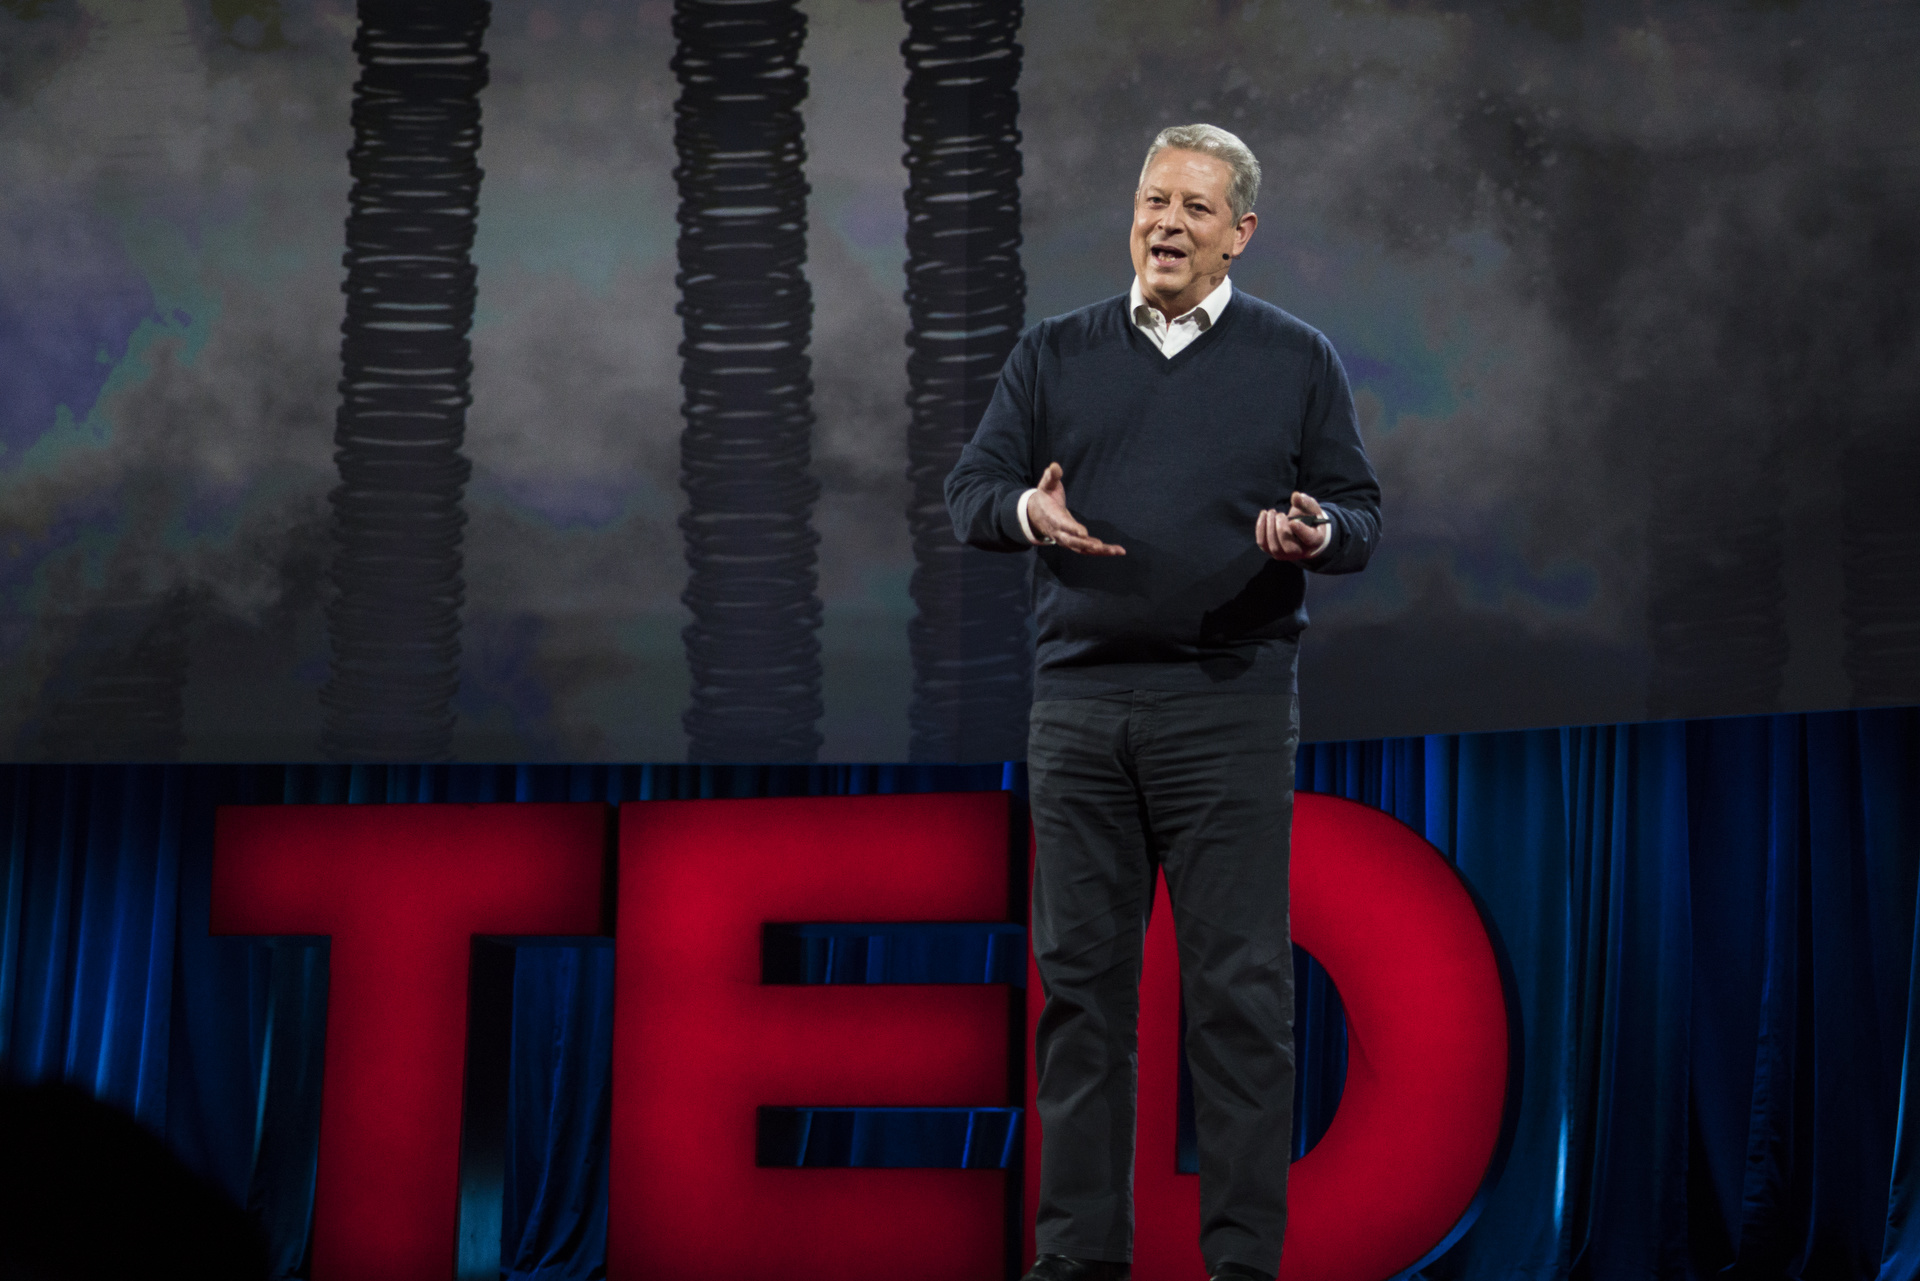 Чтобы убедить нас выучить текст выступления, сотрудники TED рассказывали, что бывший вице-президент США Эл Гор тоже учит свою речь наизусть, и даже приходит в офис организации в Нью-Йорке, чтобы порепетировать. Фото: Брет Хартман / TED